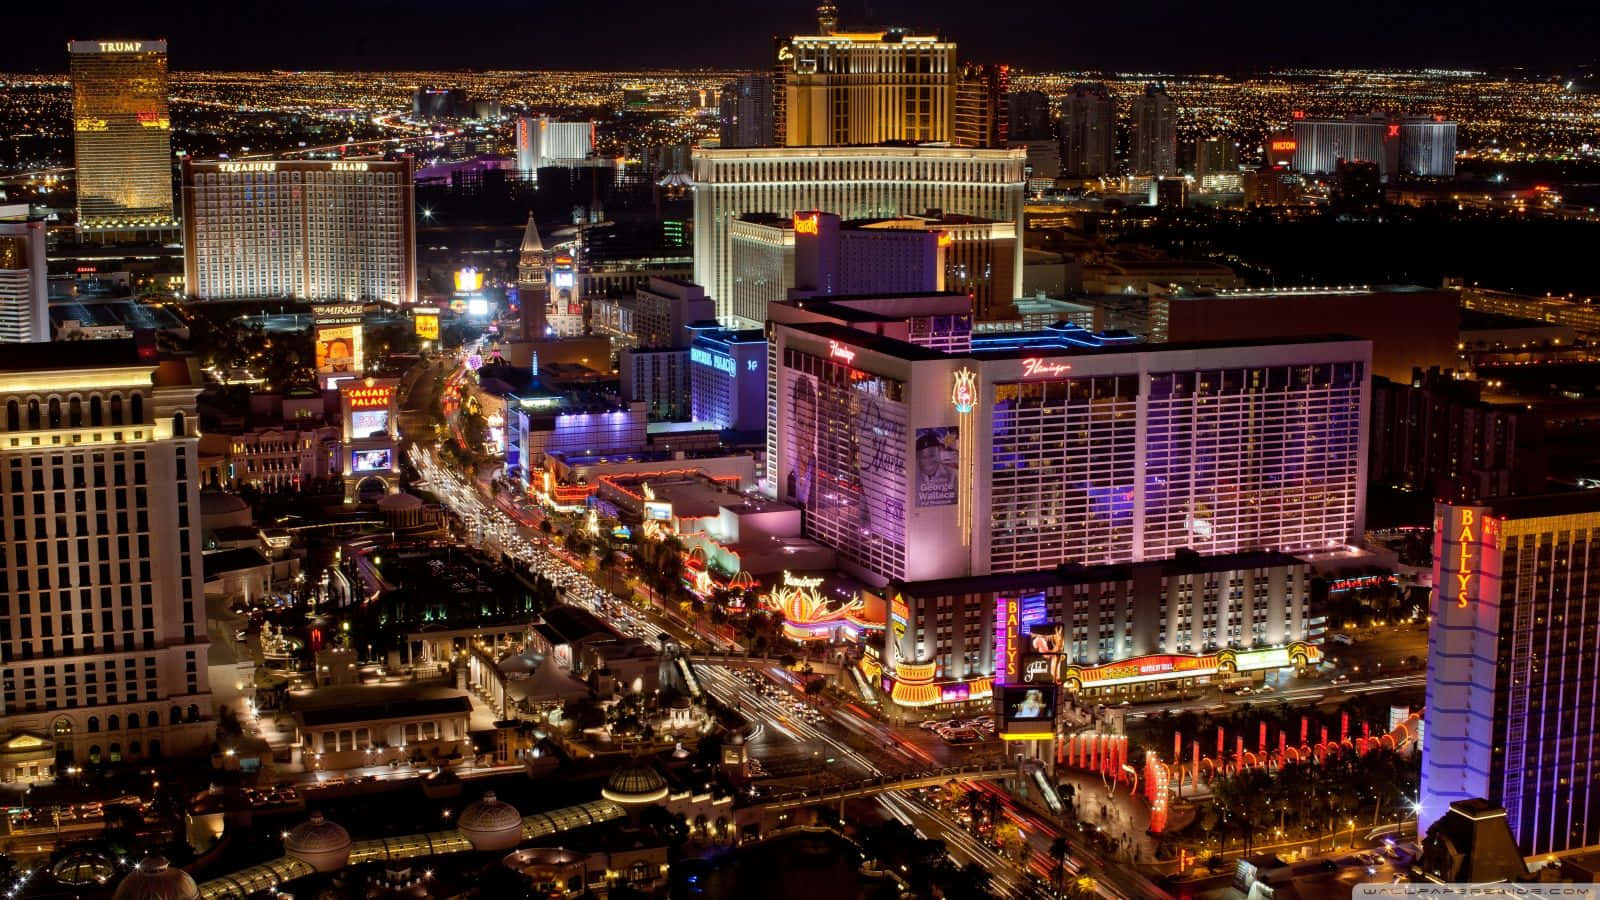 Dieikonische Skyline Von Las Vegas Bei Nacht Wallpaper